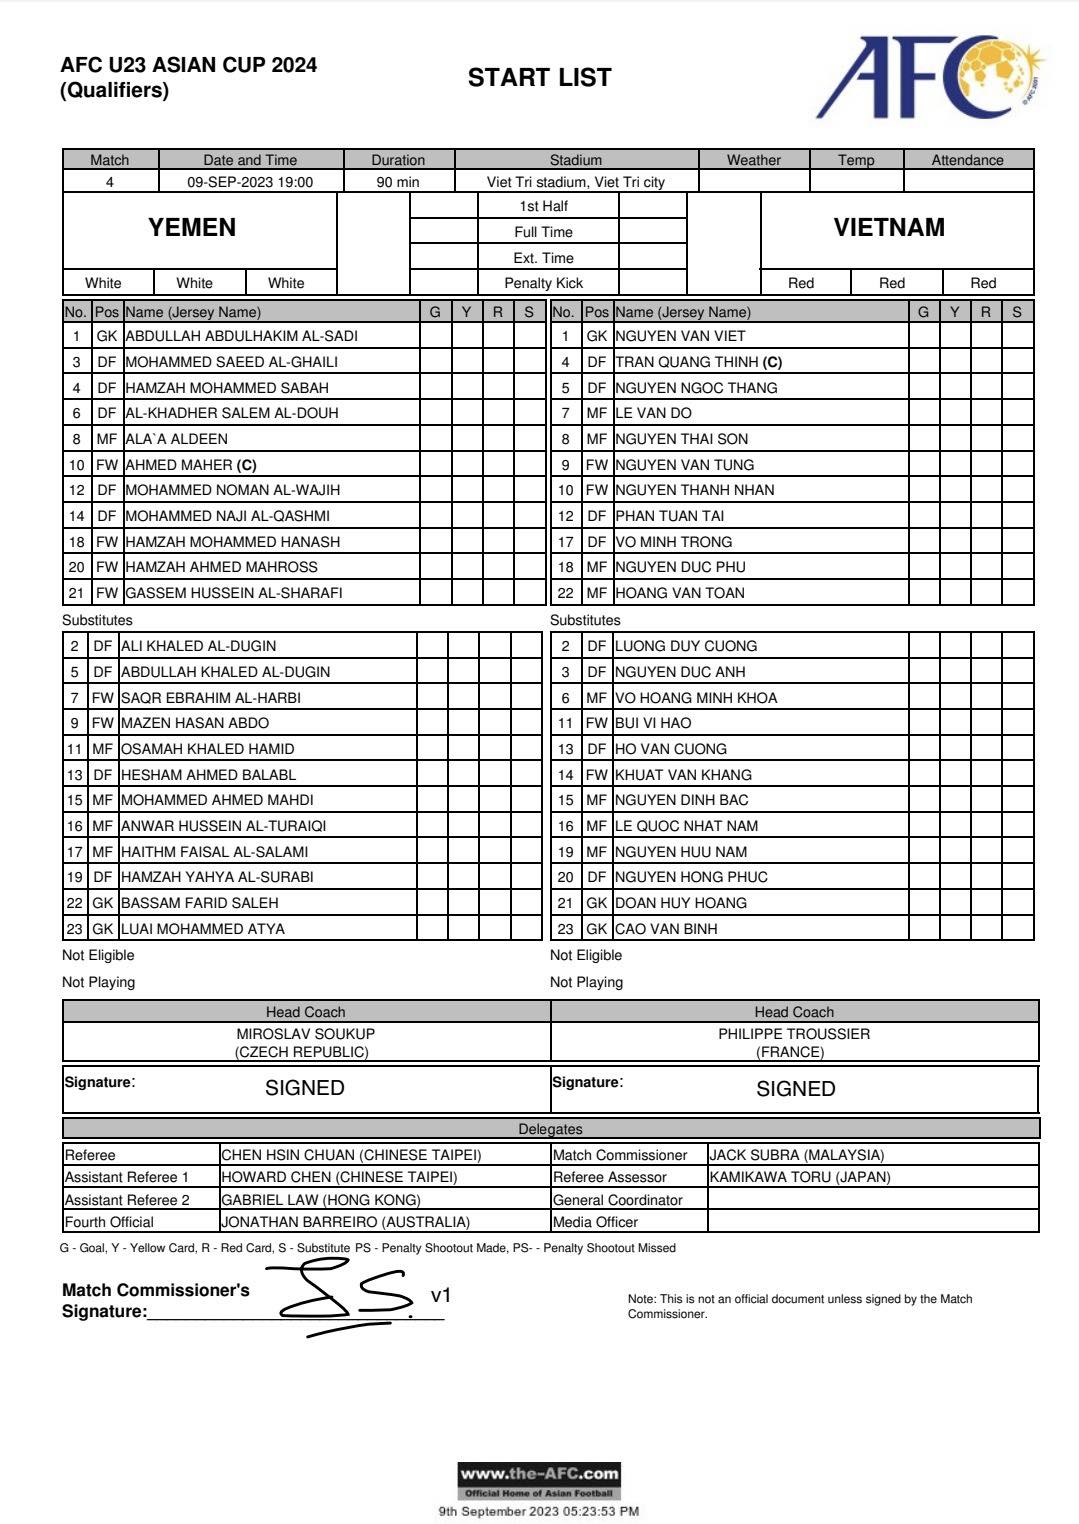 Đội hình ra sân của U23 Việt Nam và U23 Yemen. Ảnh: AFC